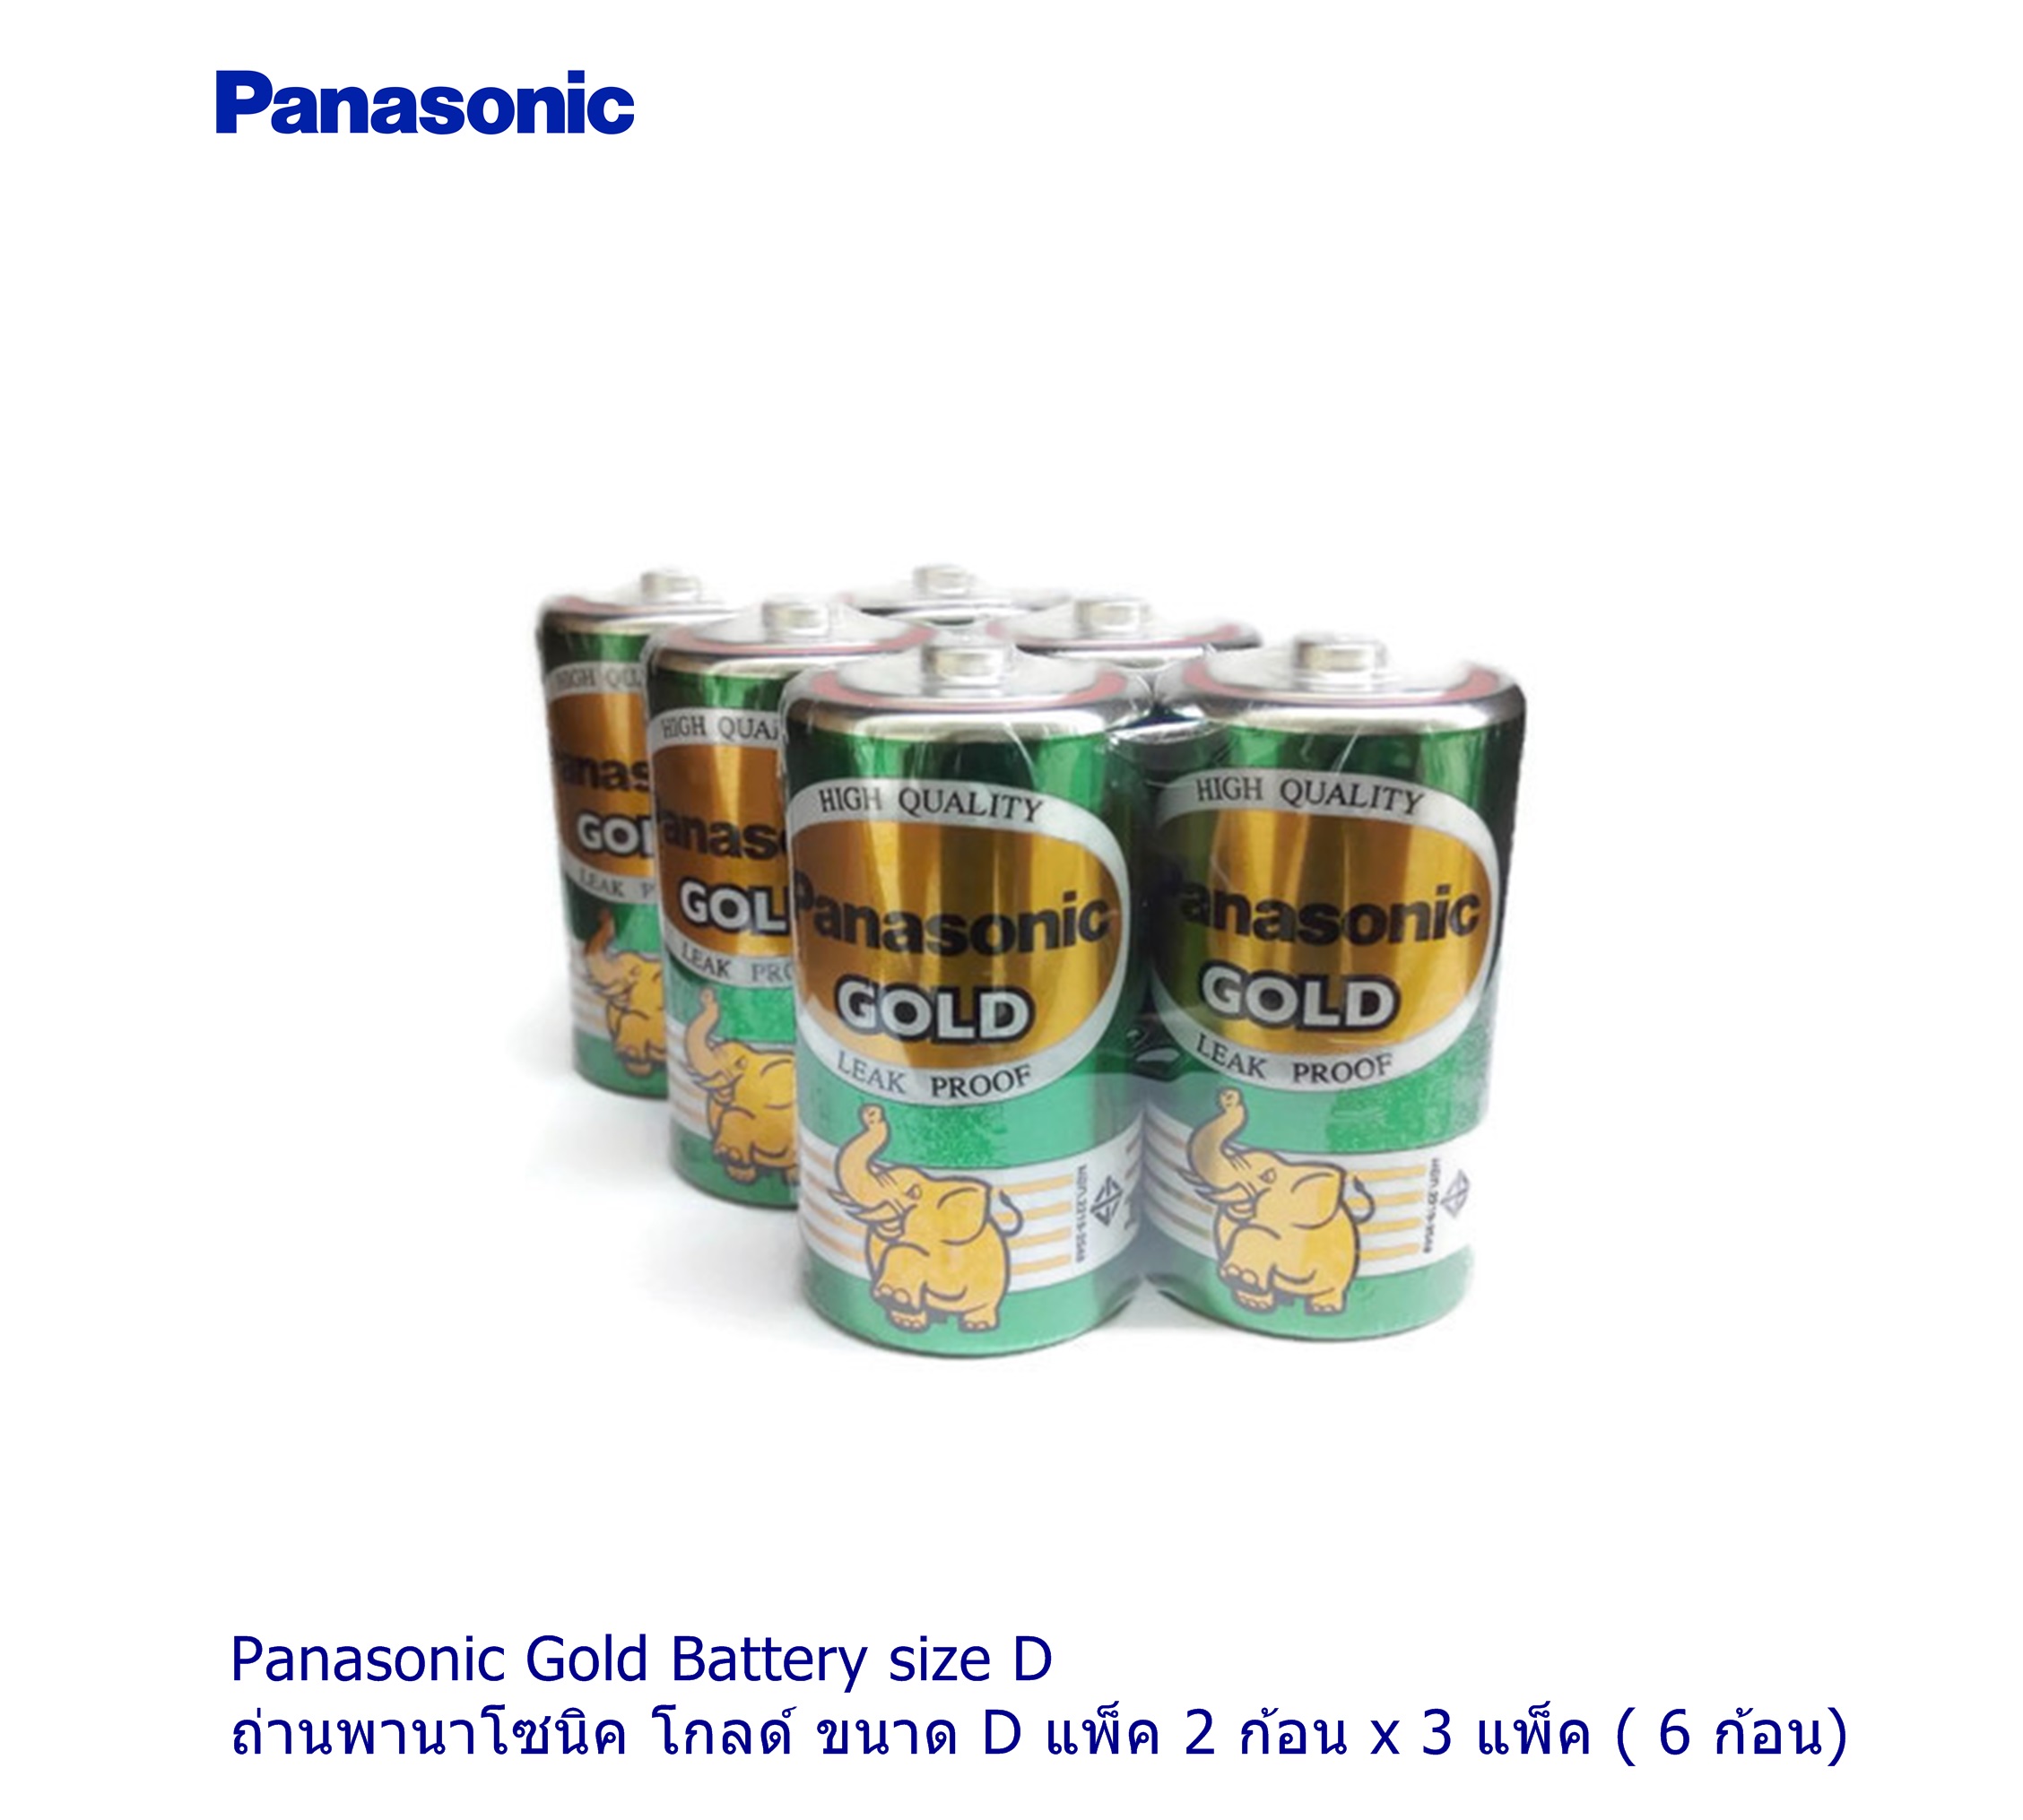 Panasonic Battery GOLD size D ถ่านพานาโซนิค สีทอง ขนาด D รุ่น R20GT/2SL แพ็ค 2 ก้อน x 3 แพ็ค ( 6 ก้อน)